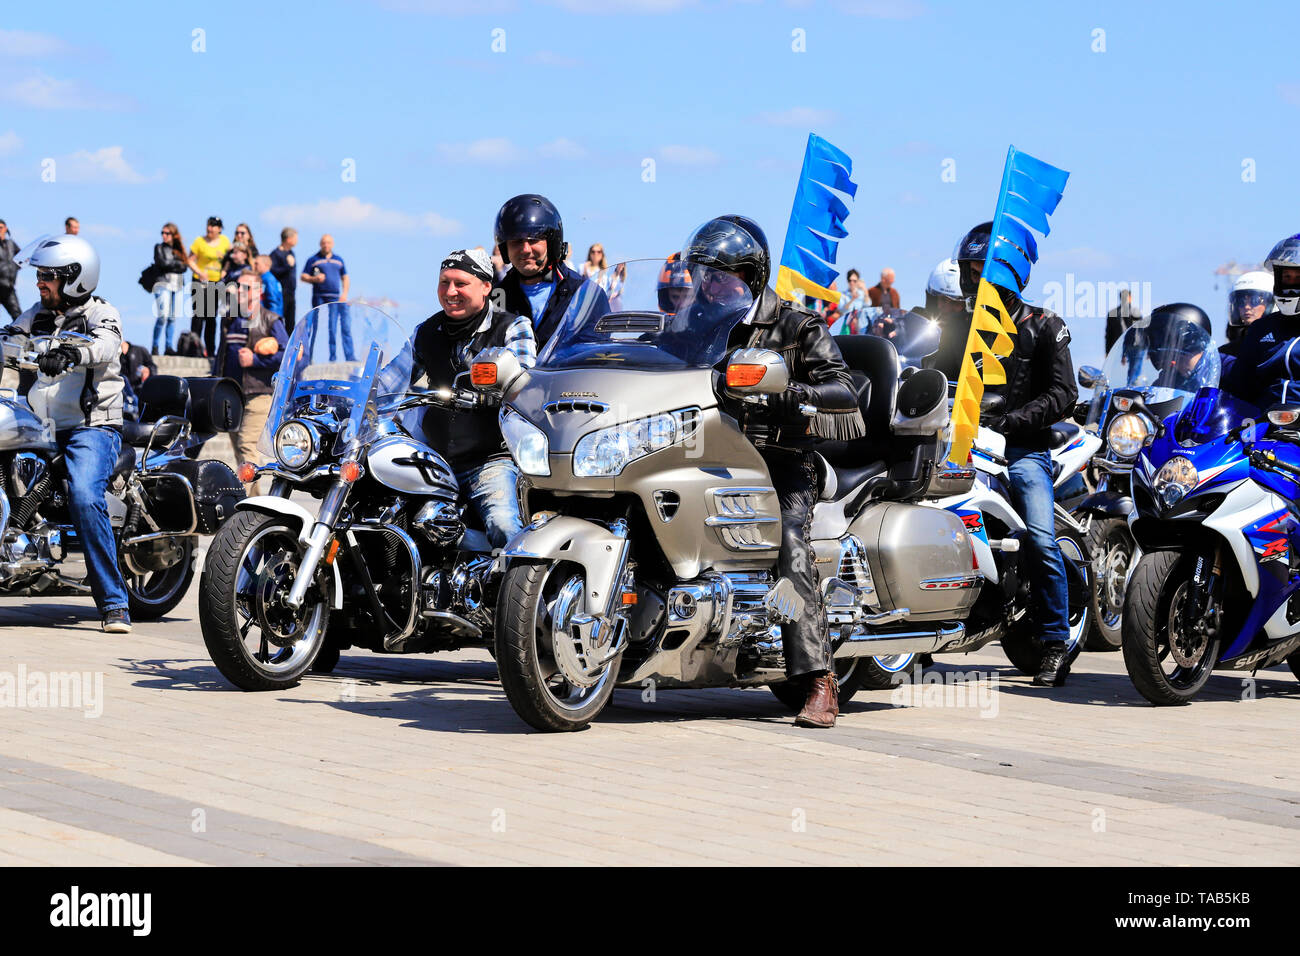 Dniepr, l'Ukraine, 2804, 2018. Motocyclistes sur belle cher motos avec un fanion bleu- jaune, ouvrir la saison en moto Banque D'Images